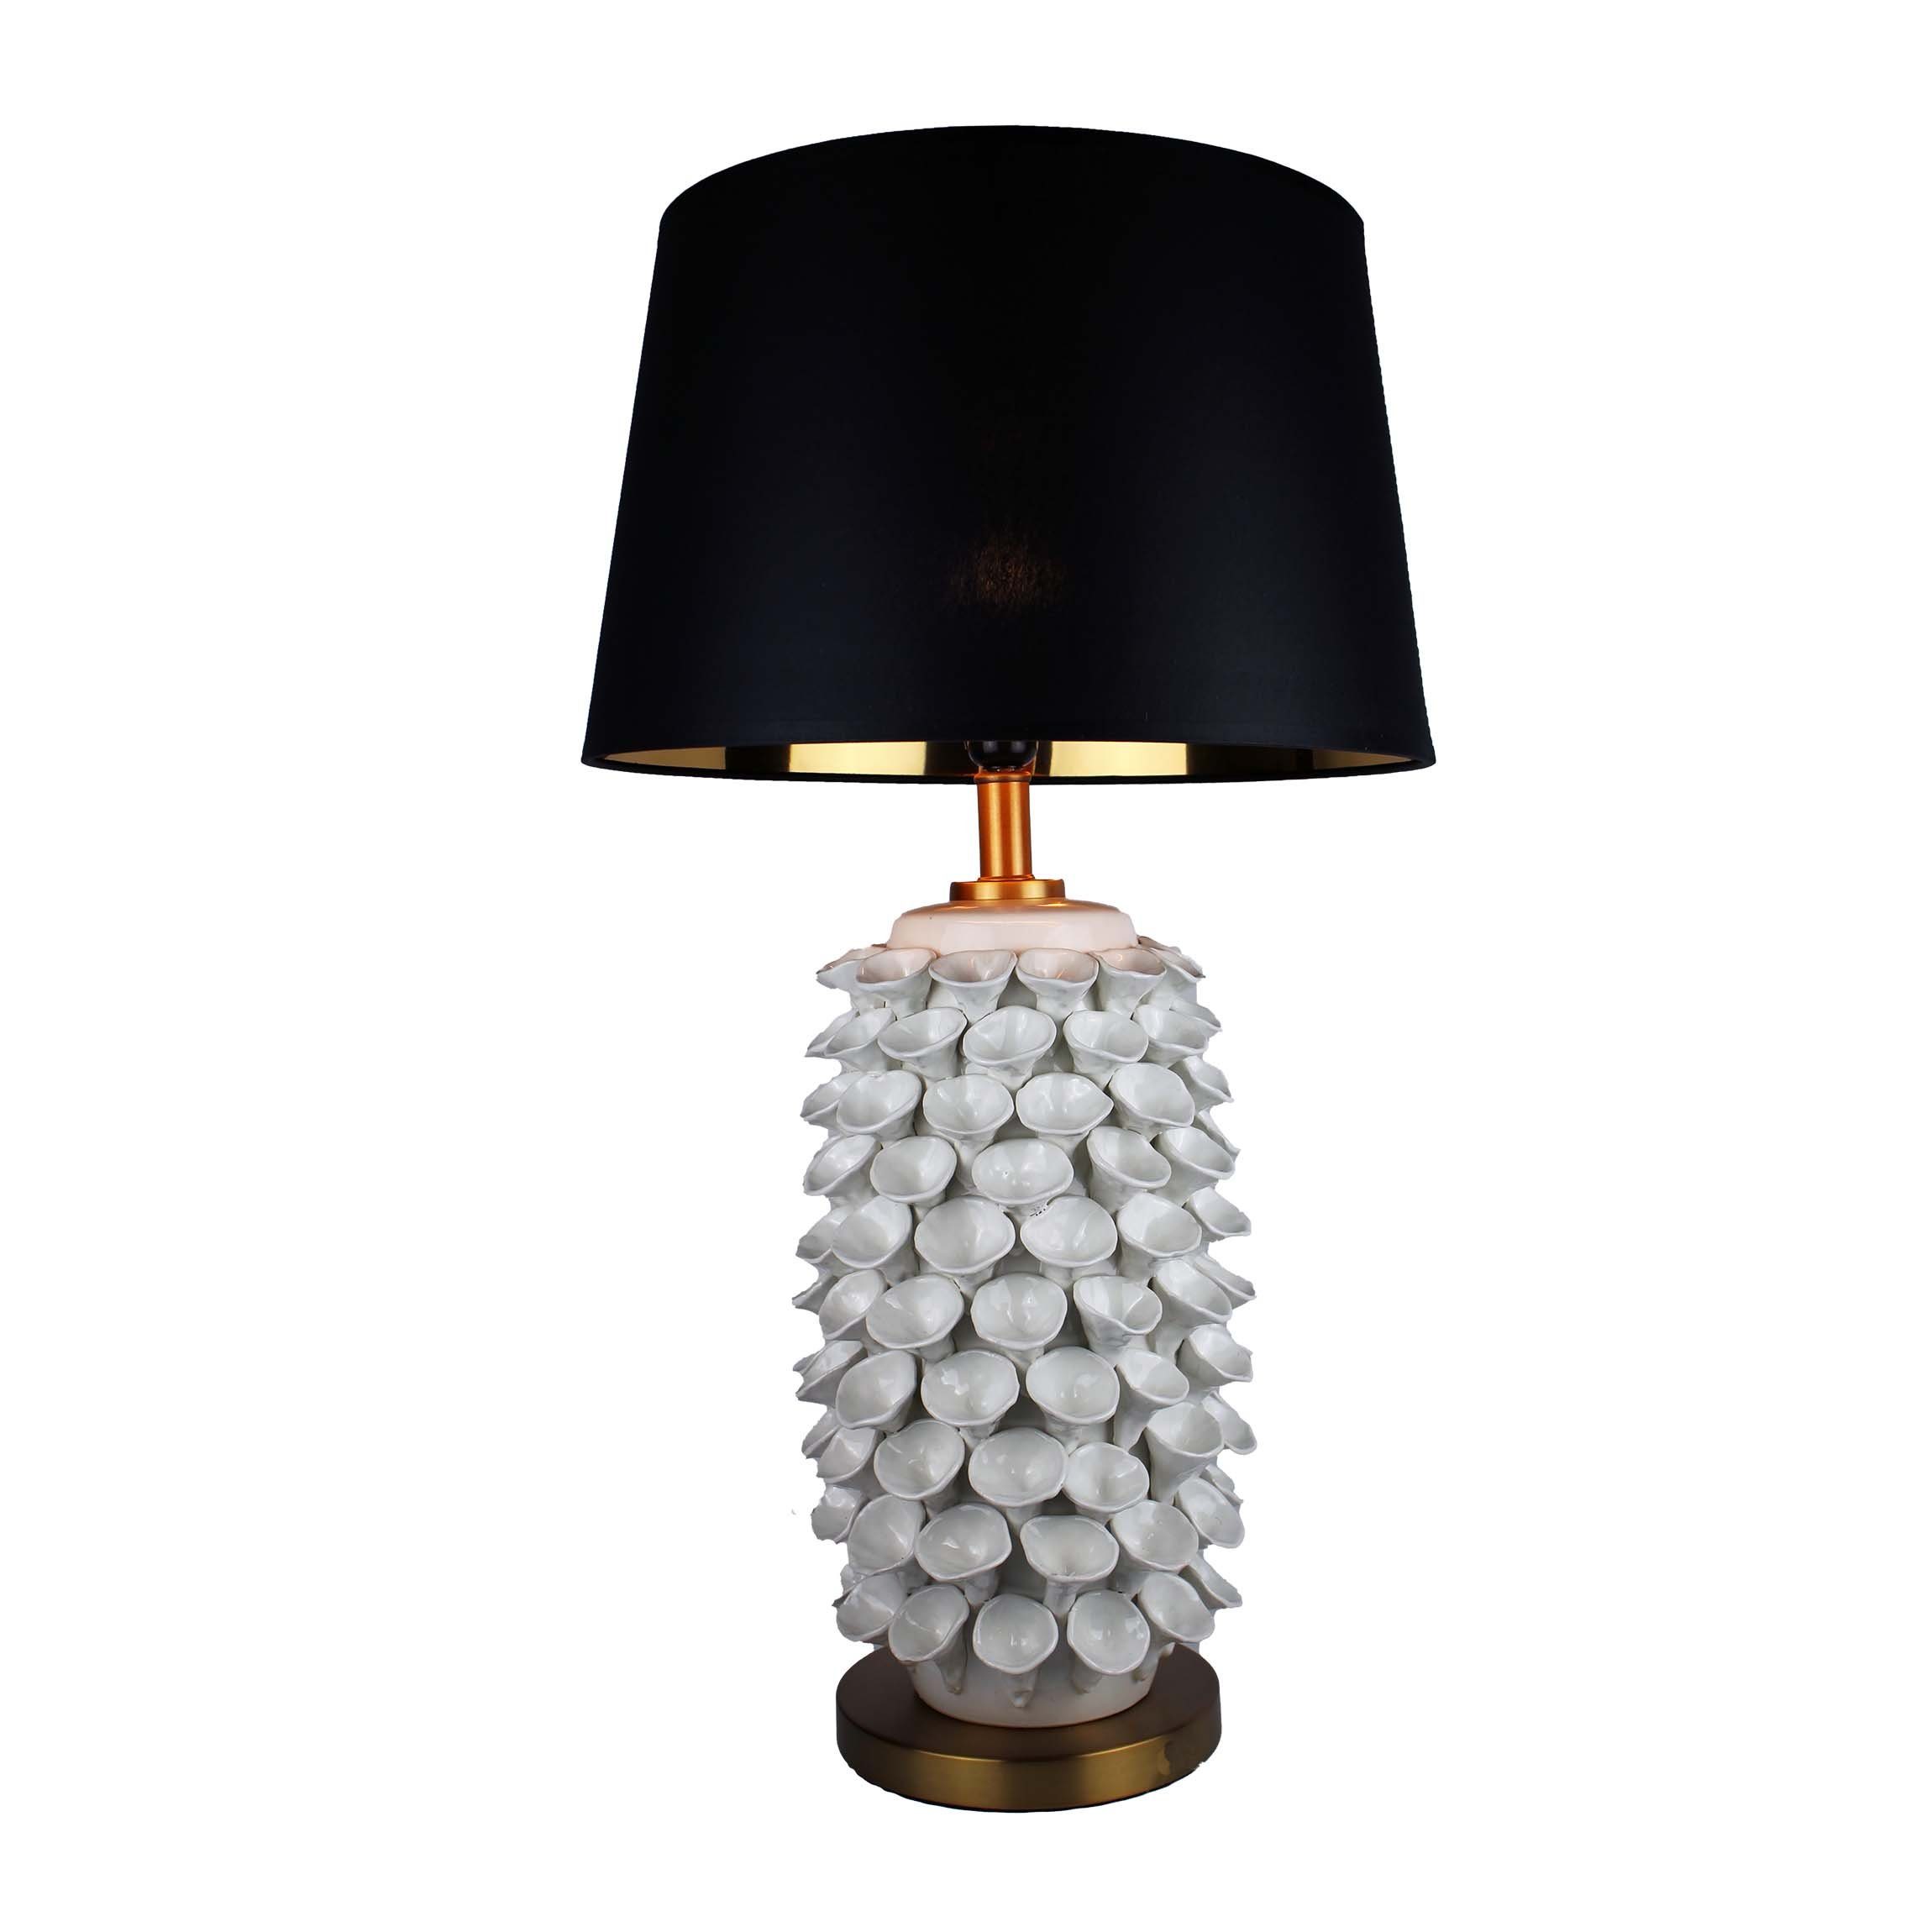 Cosy Home ohne mit Beleuchtung Lampenschirm Tischleuchte Keramik Leuchtmittel, warmweiß, weiß Ideas in Tischlampe eine weiß, angenehme für